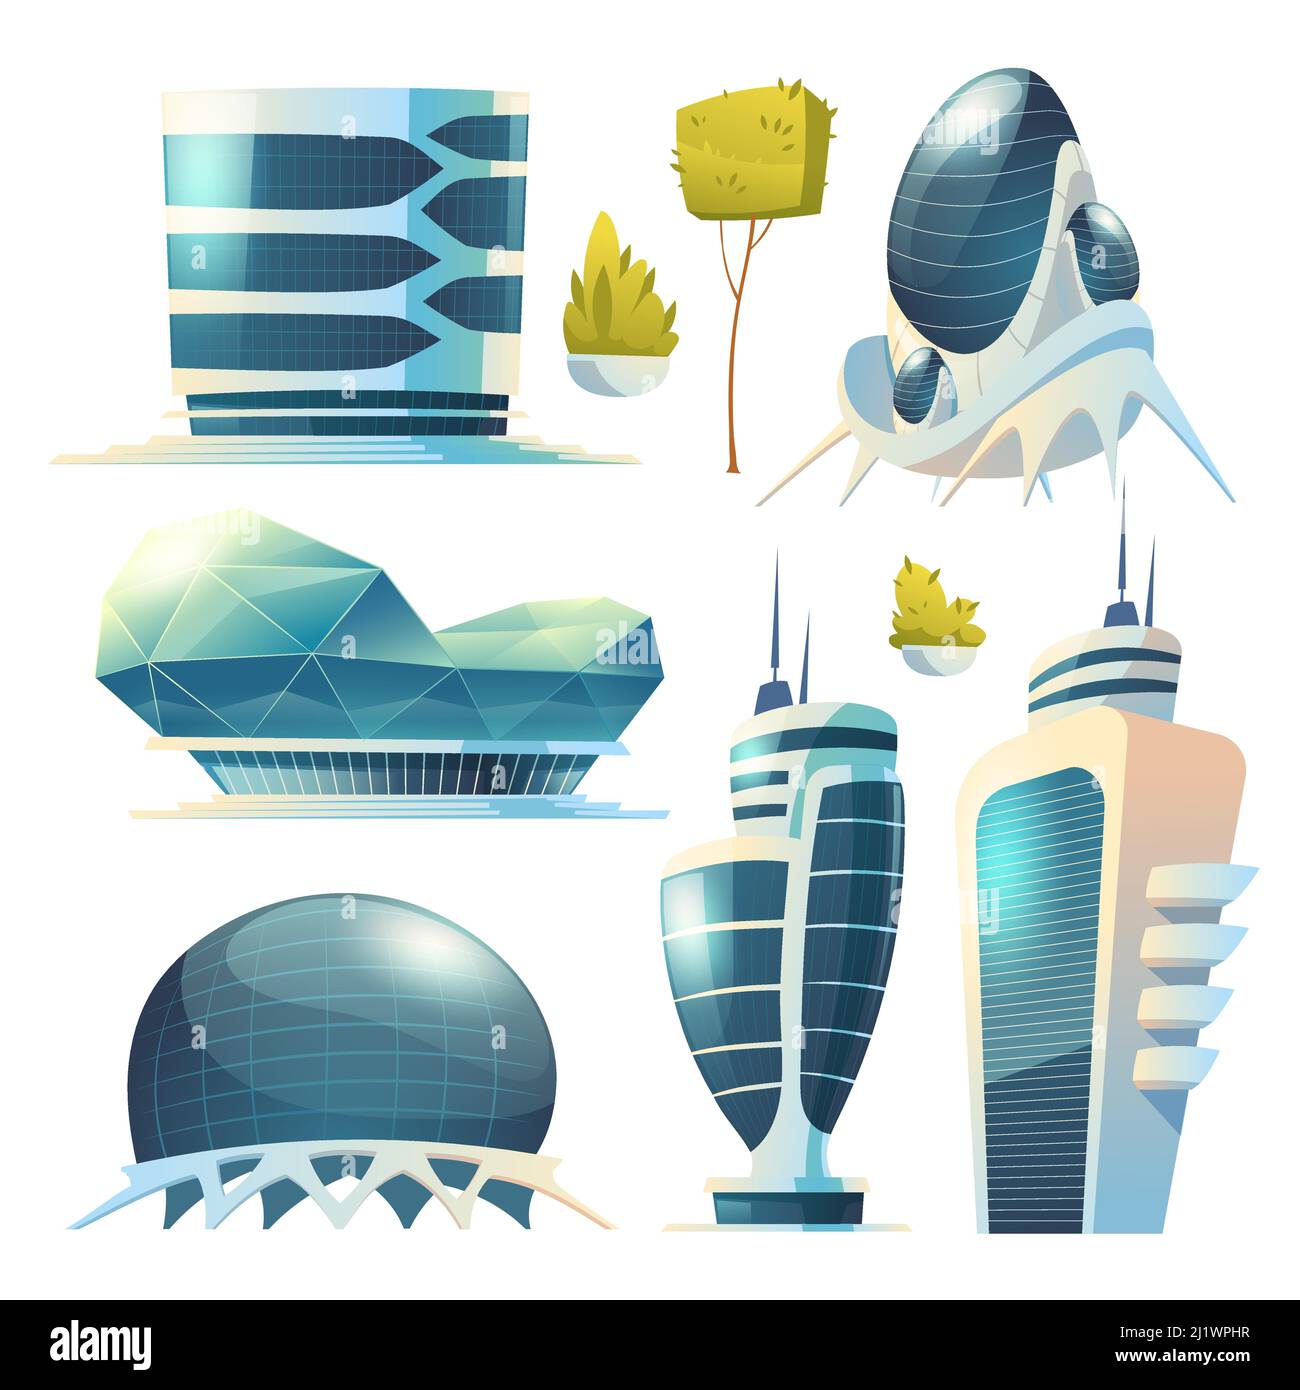 Città del futuro, futuristici edifici in vetro dalle forme insolite e piante verdi isolati su sfondo bianco. Torri e grattacieli dall'architettura moderna. R Illustrazione Vettoriale